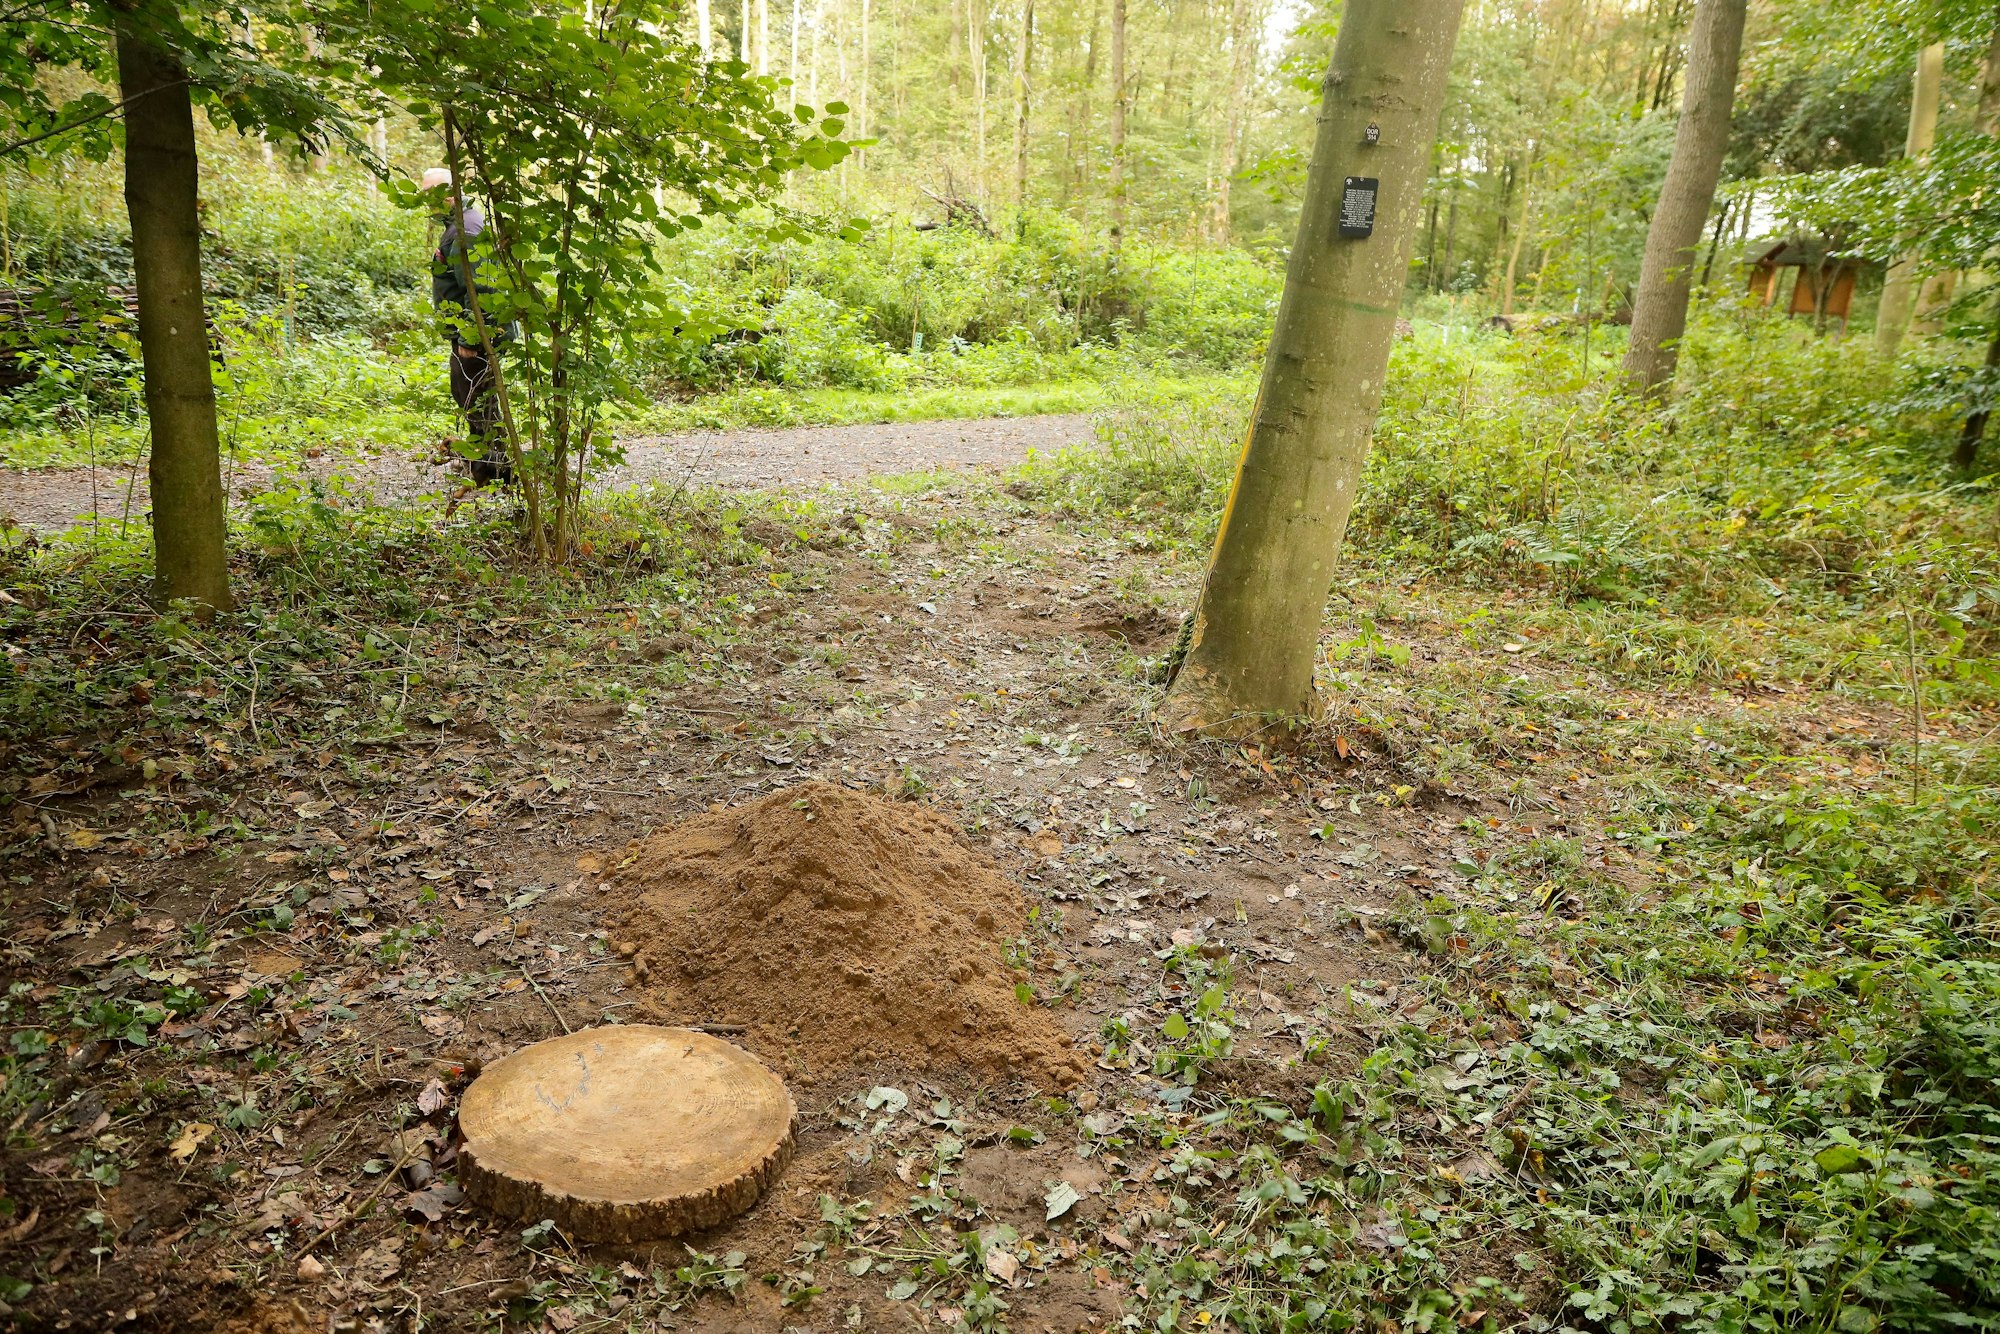 Ein Erdhaufen auf Waldboden, daneben eine Baumscheibe, die ein Loch zudeckt.